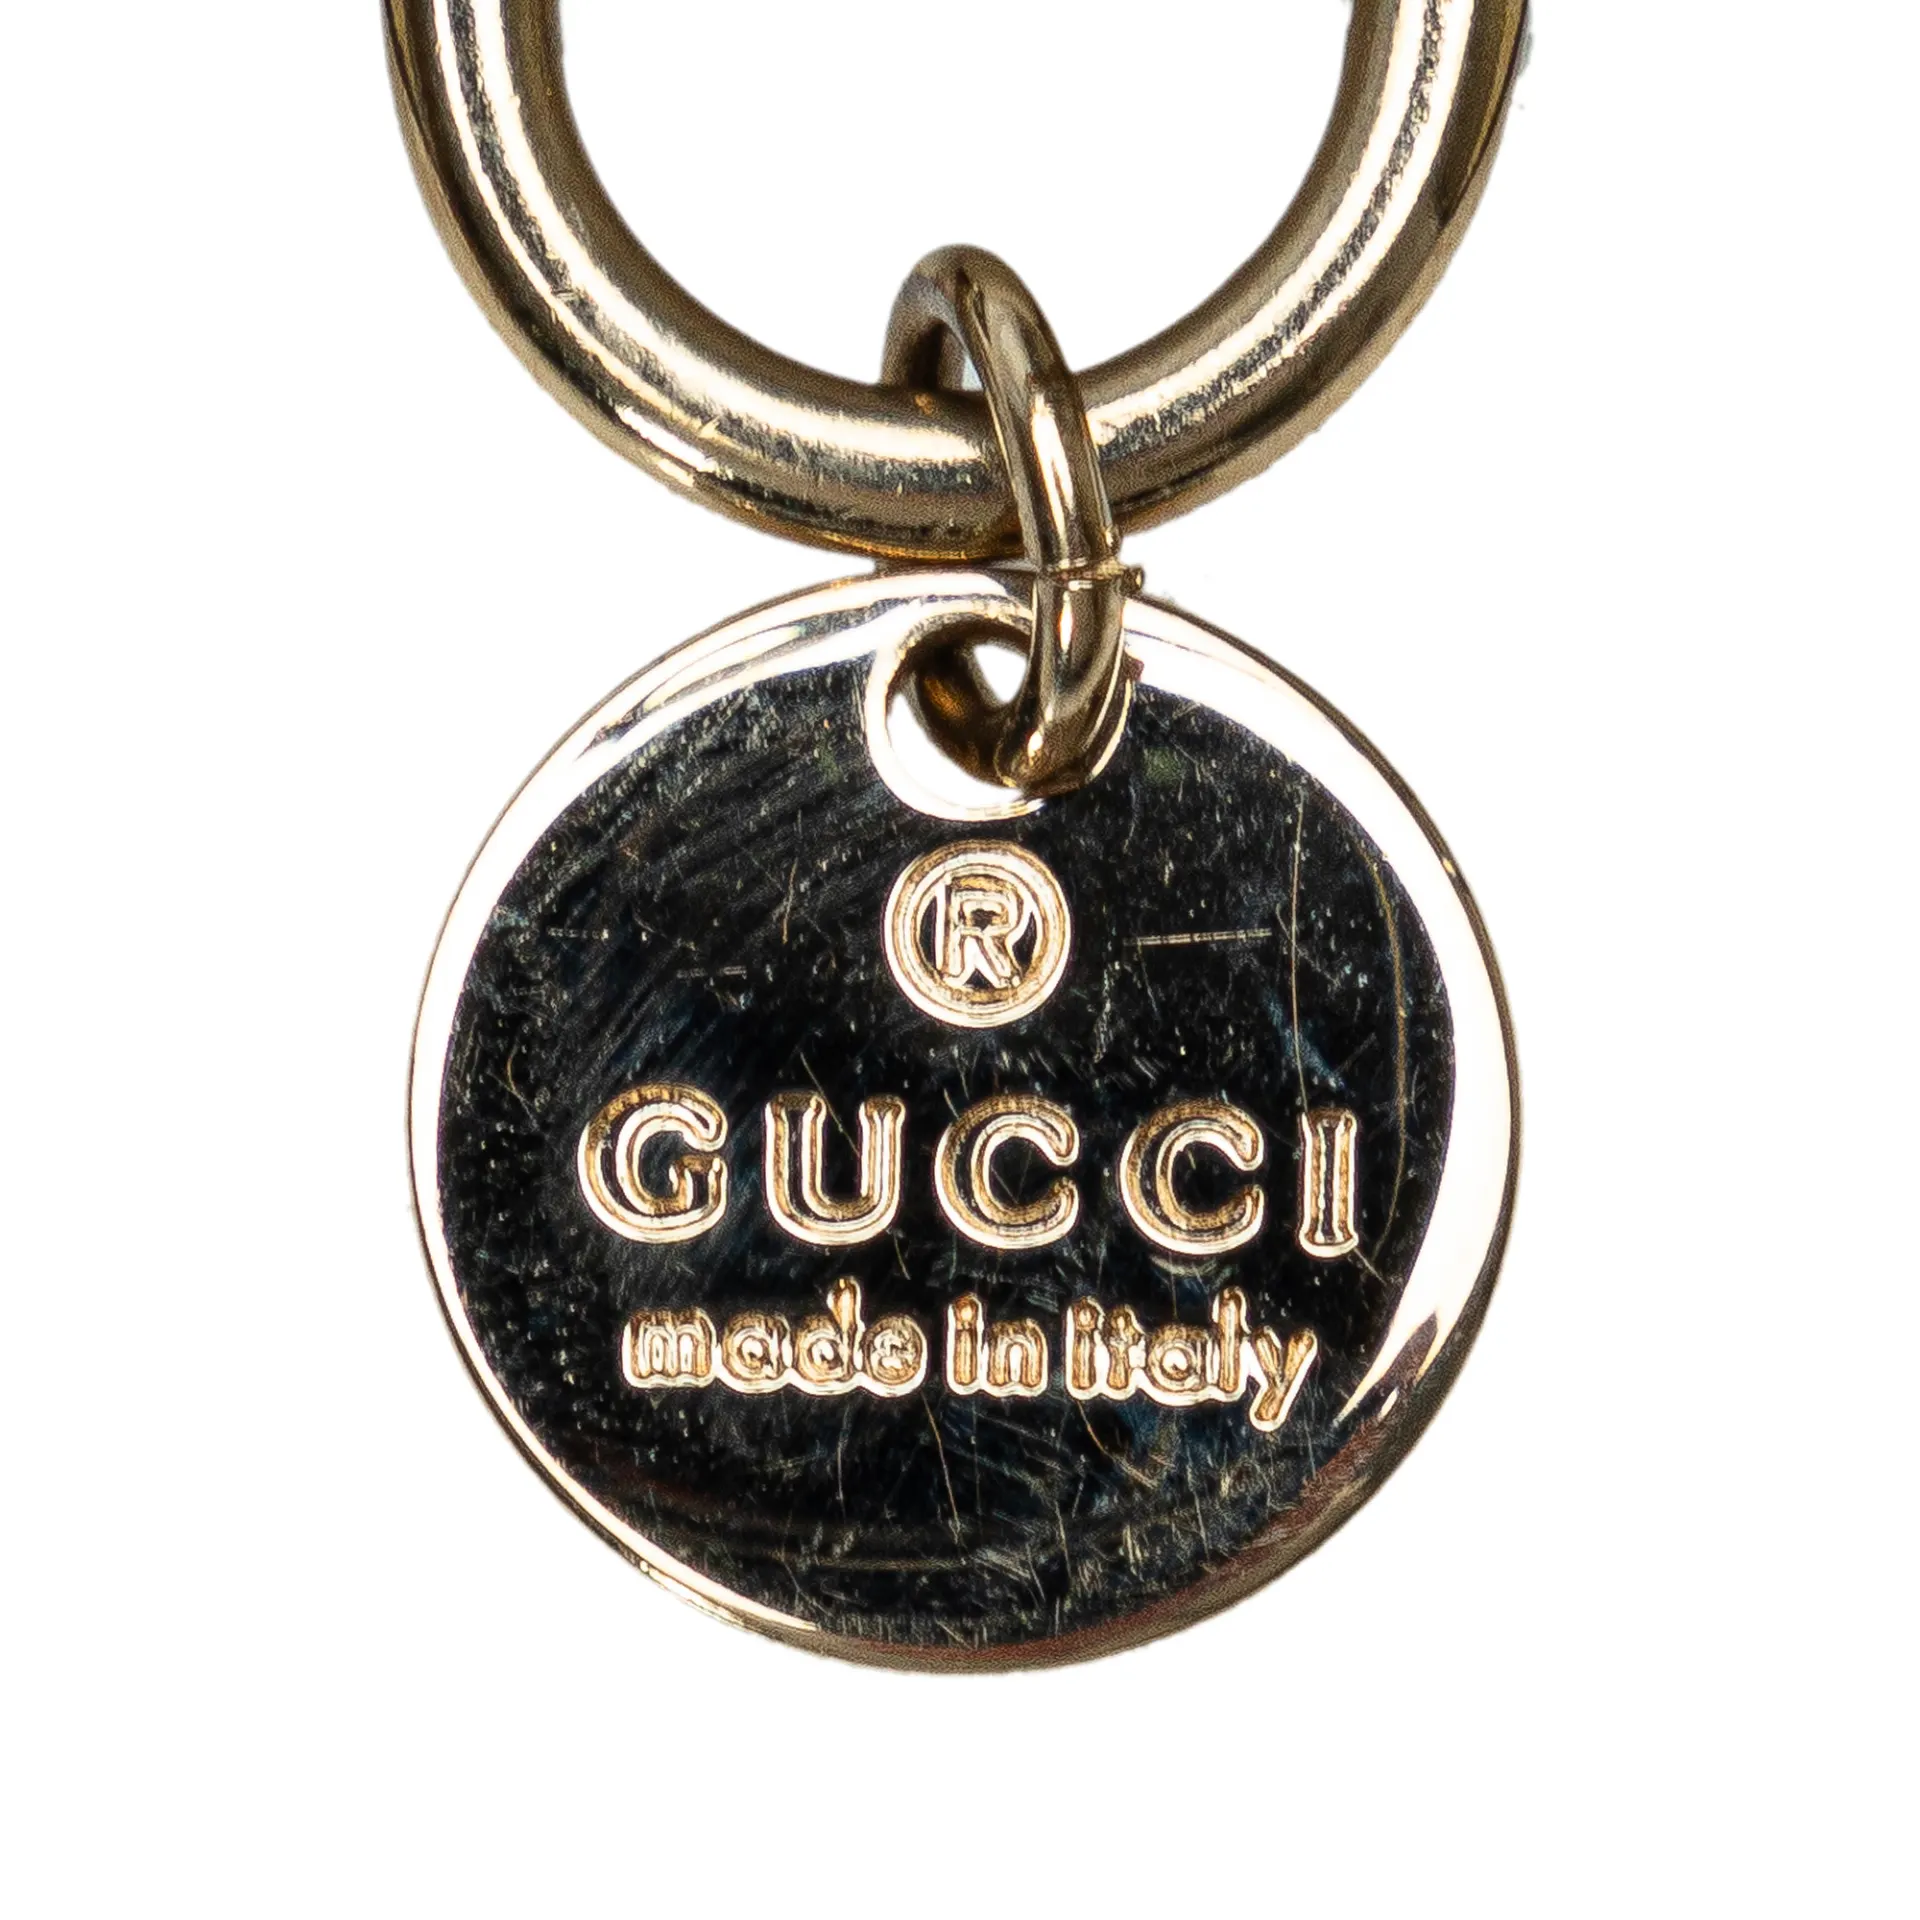 Gucci Gg Supreme Bird Key Chain